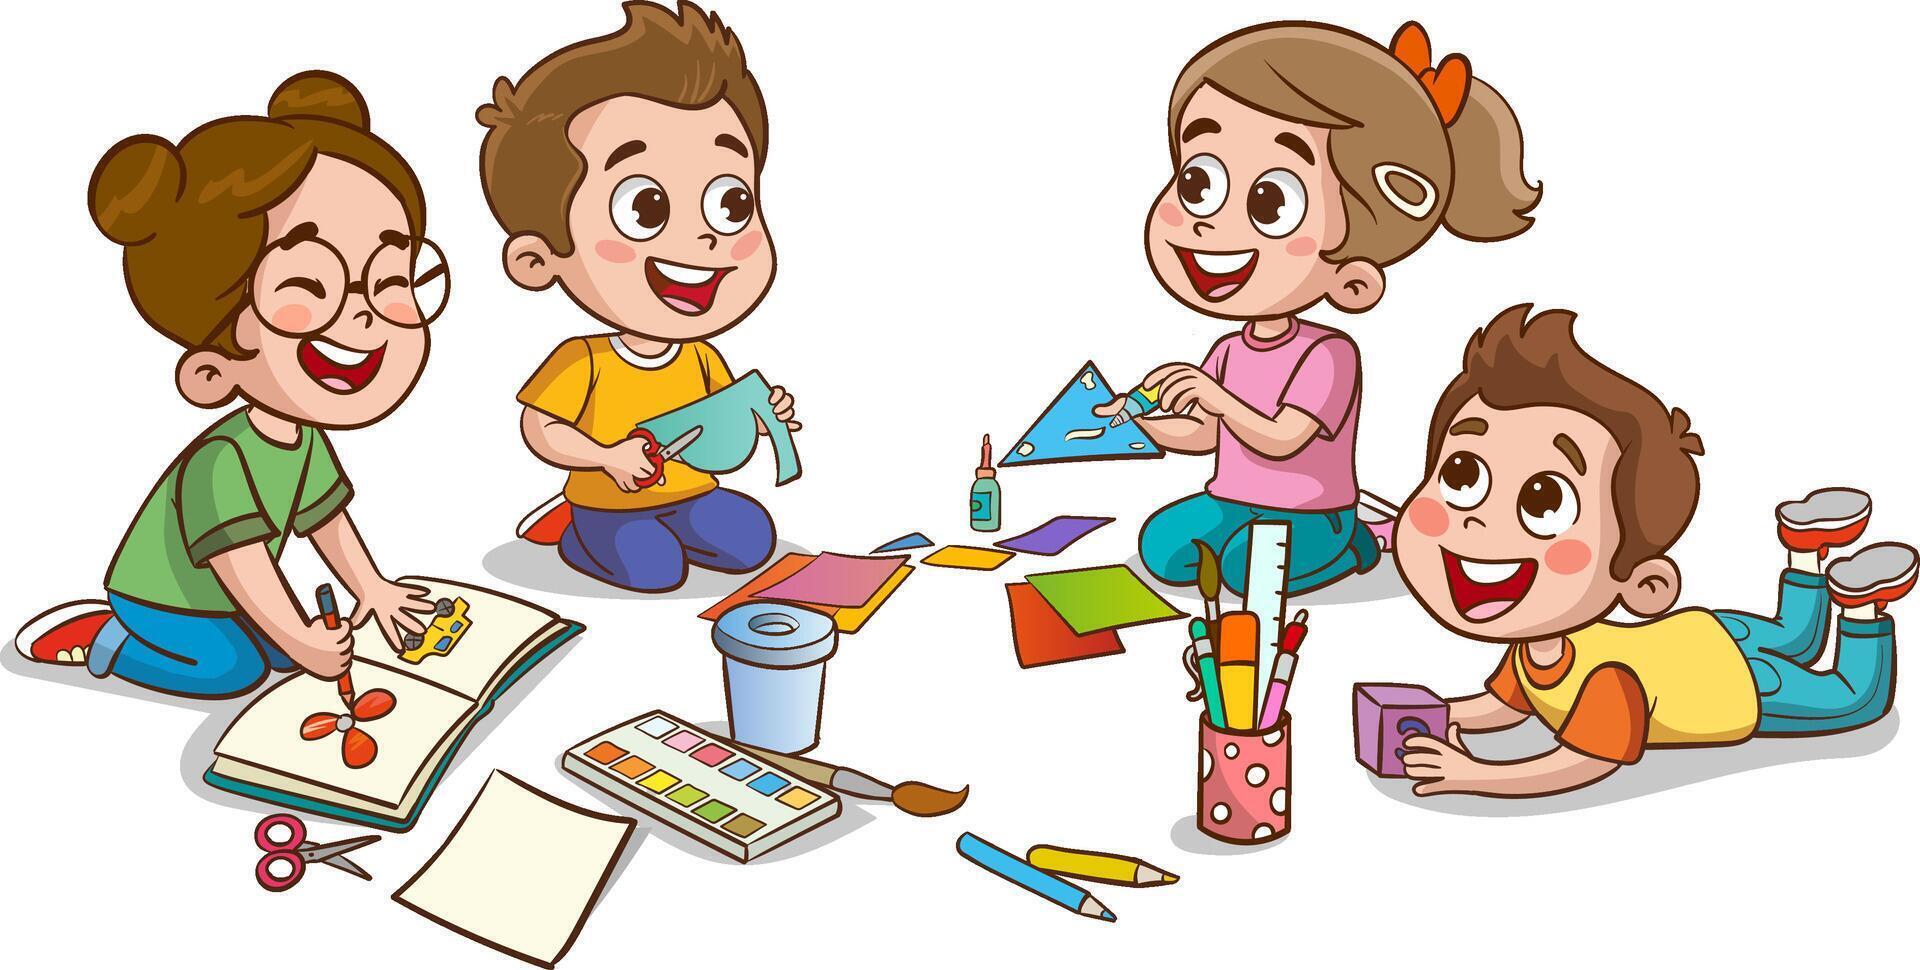 les enfants dessin avec des crayons et des peintures. vecteur illustration de une groupe de enfants.peu mignonne des gamins Couper papier pour art avec ami.